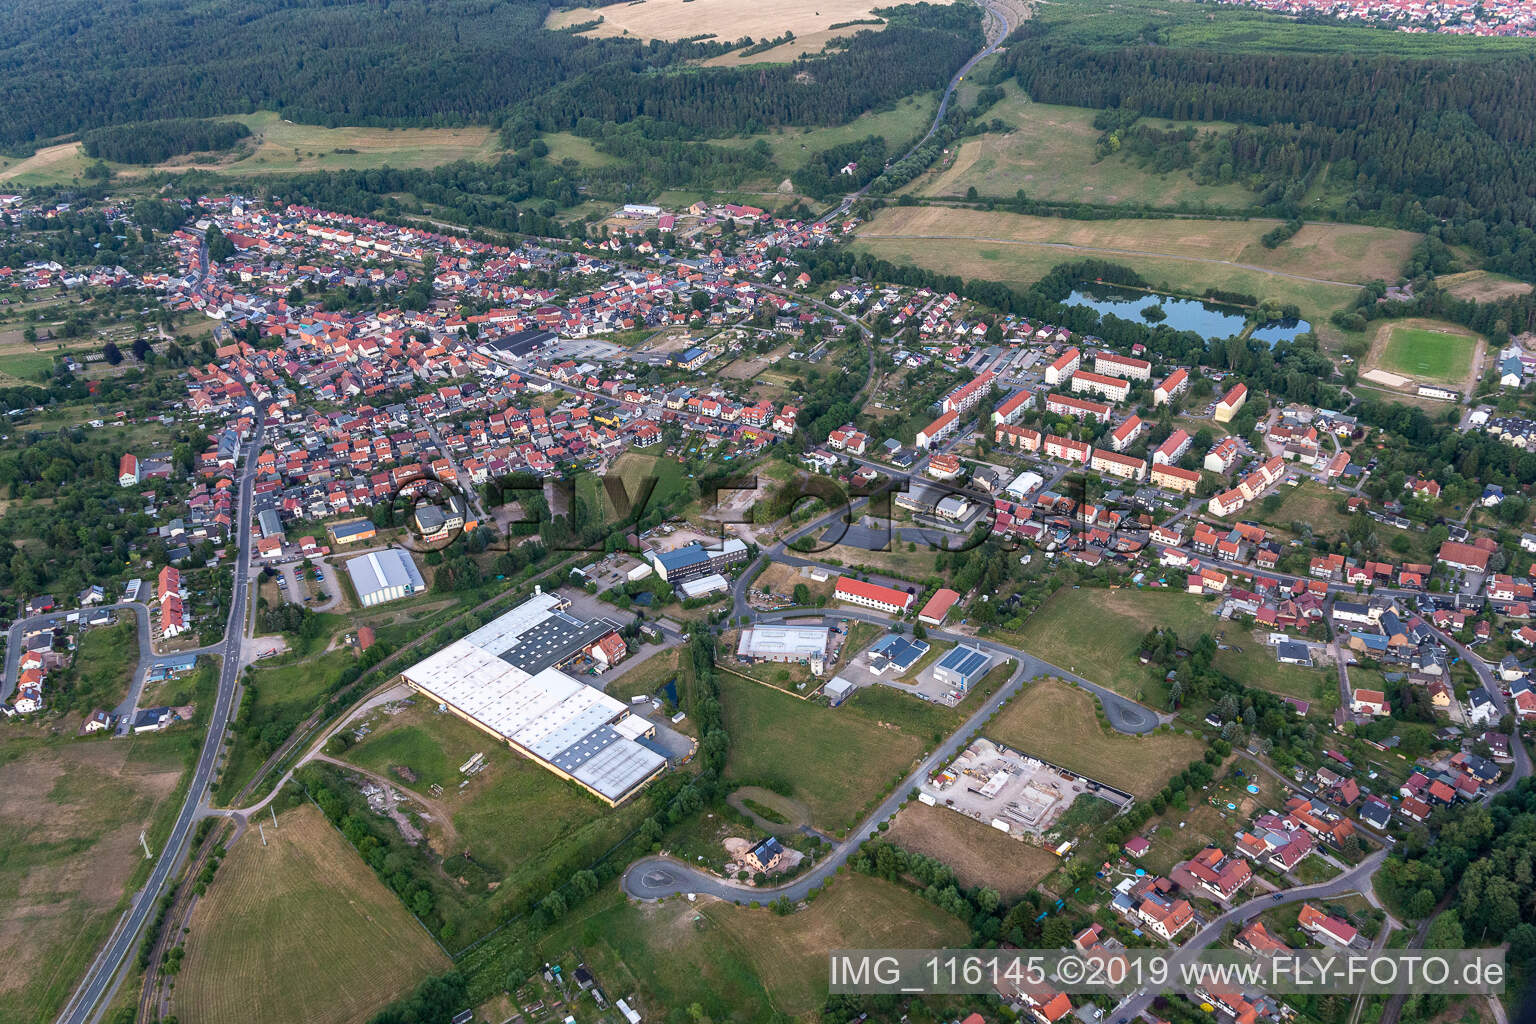 Vue aérienne de Centre-ville entouré de forêts et de zones forestières avec des rues, des maisons et des zones résidentielles à Gräfenroda à Geratal dans le département Thuringe, Allemagne